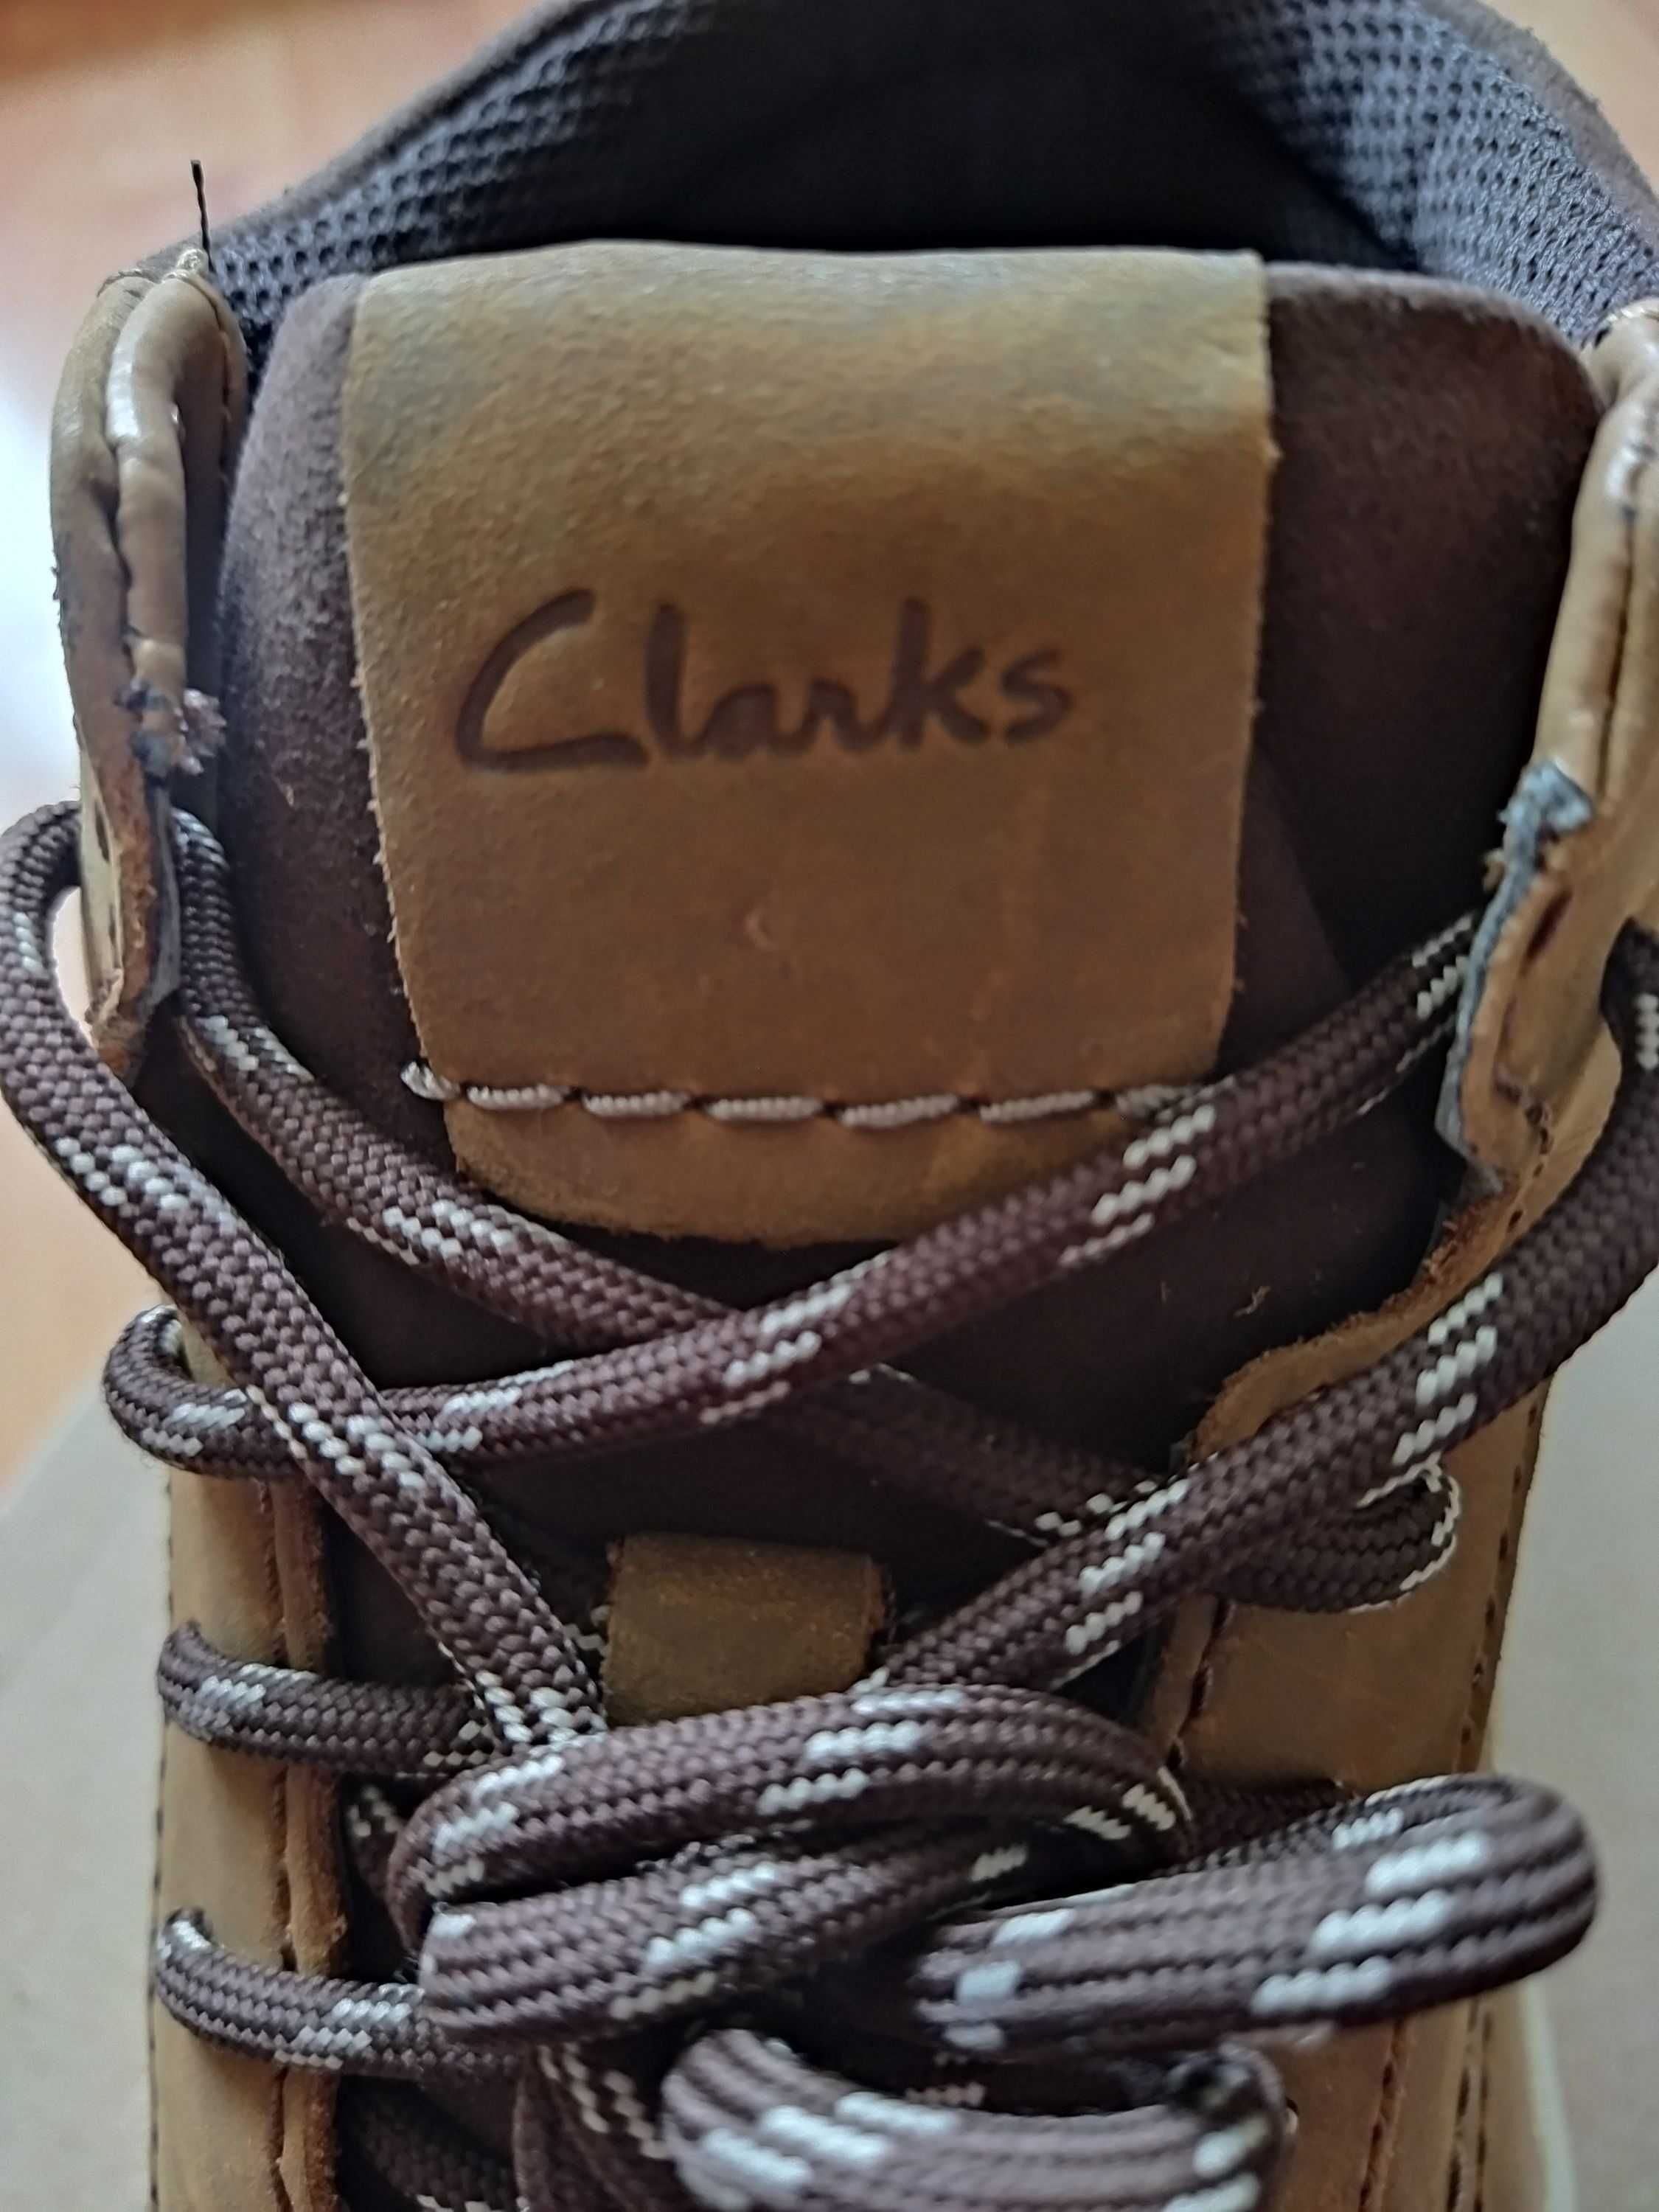 Ботинки Clarks (Великобритания),нубук,оригинал,новые,р-р 41